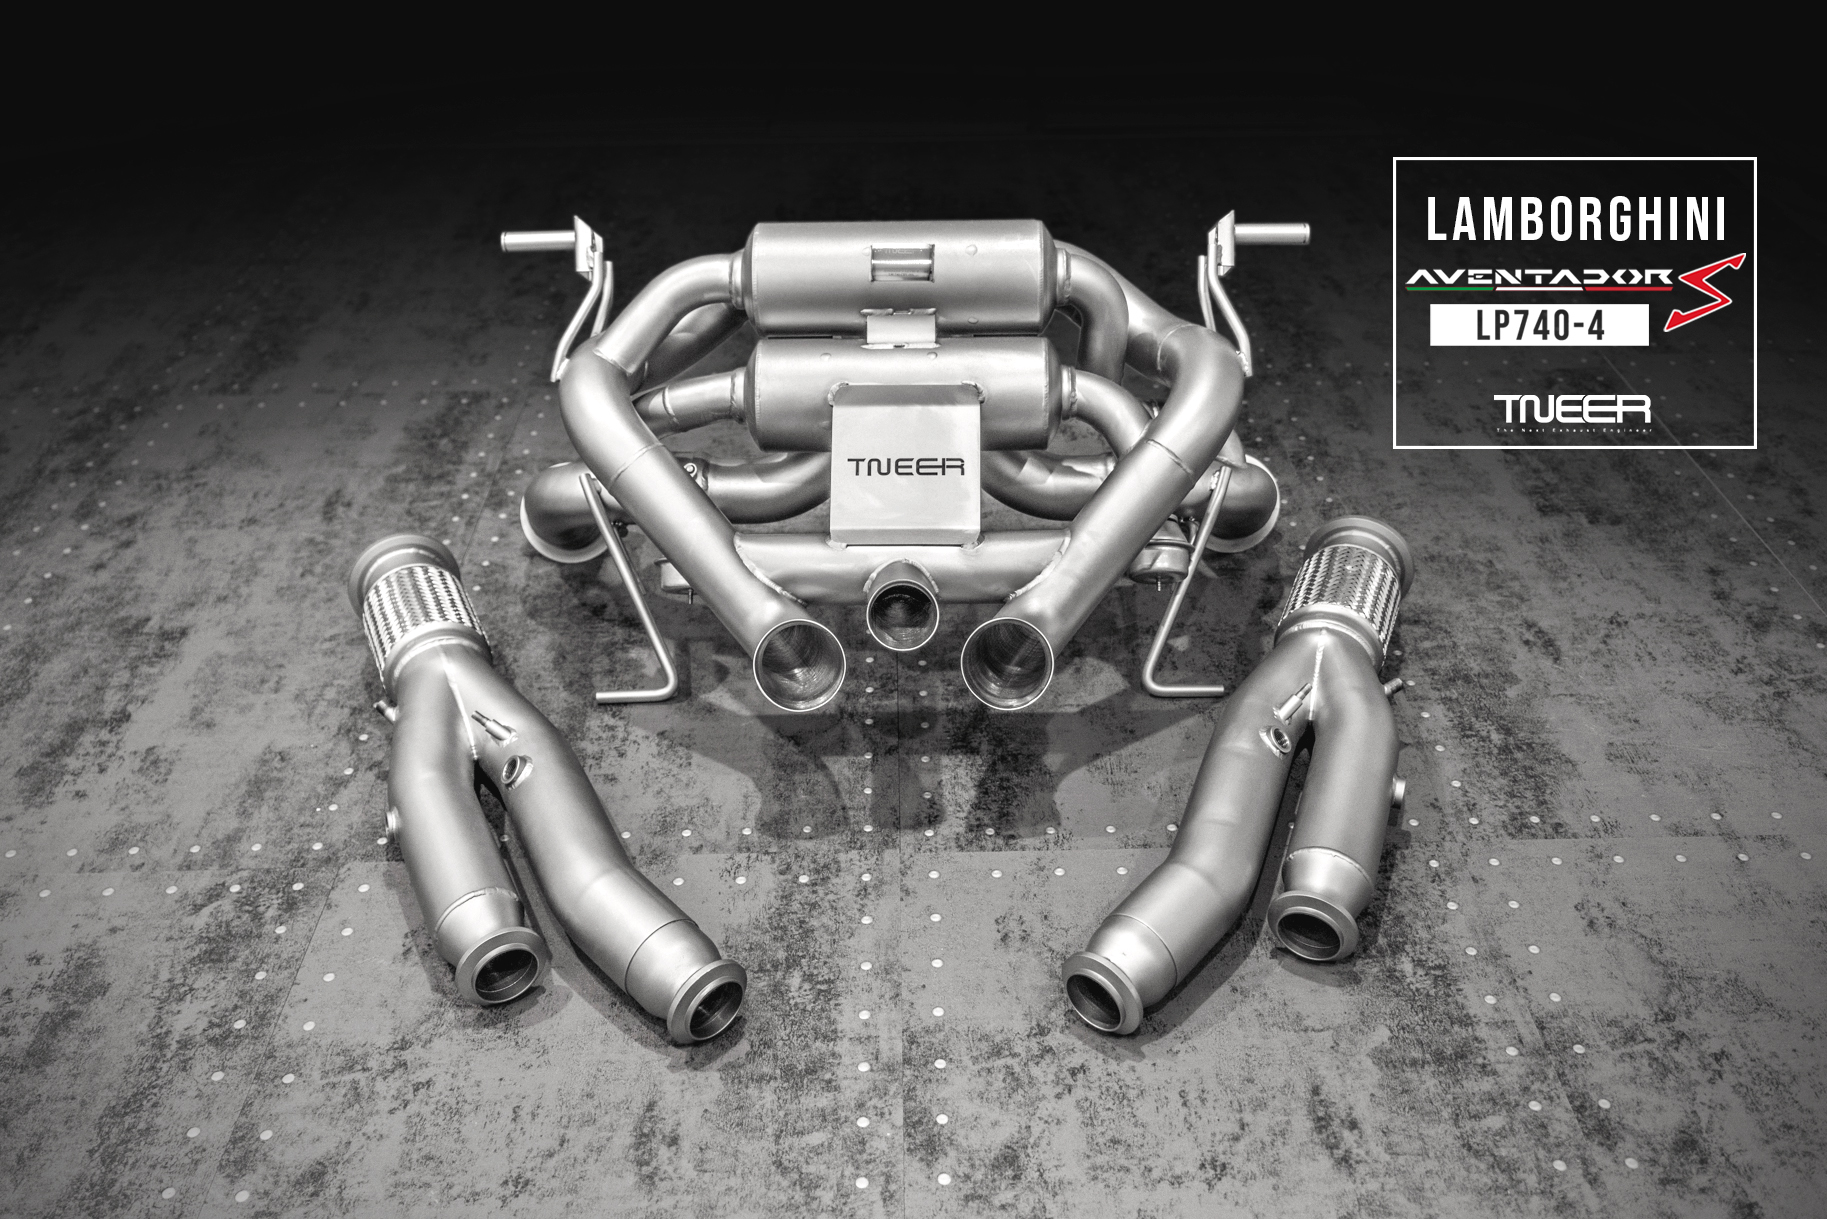 Lamborghini Aventador S LP740-4 TNEER Exhaust System